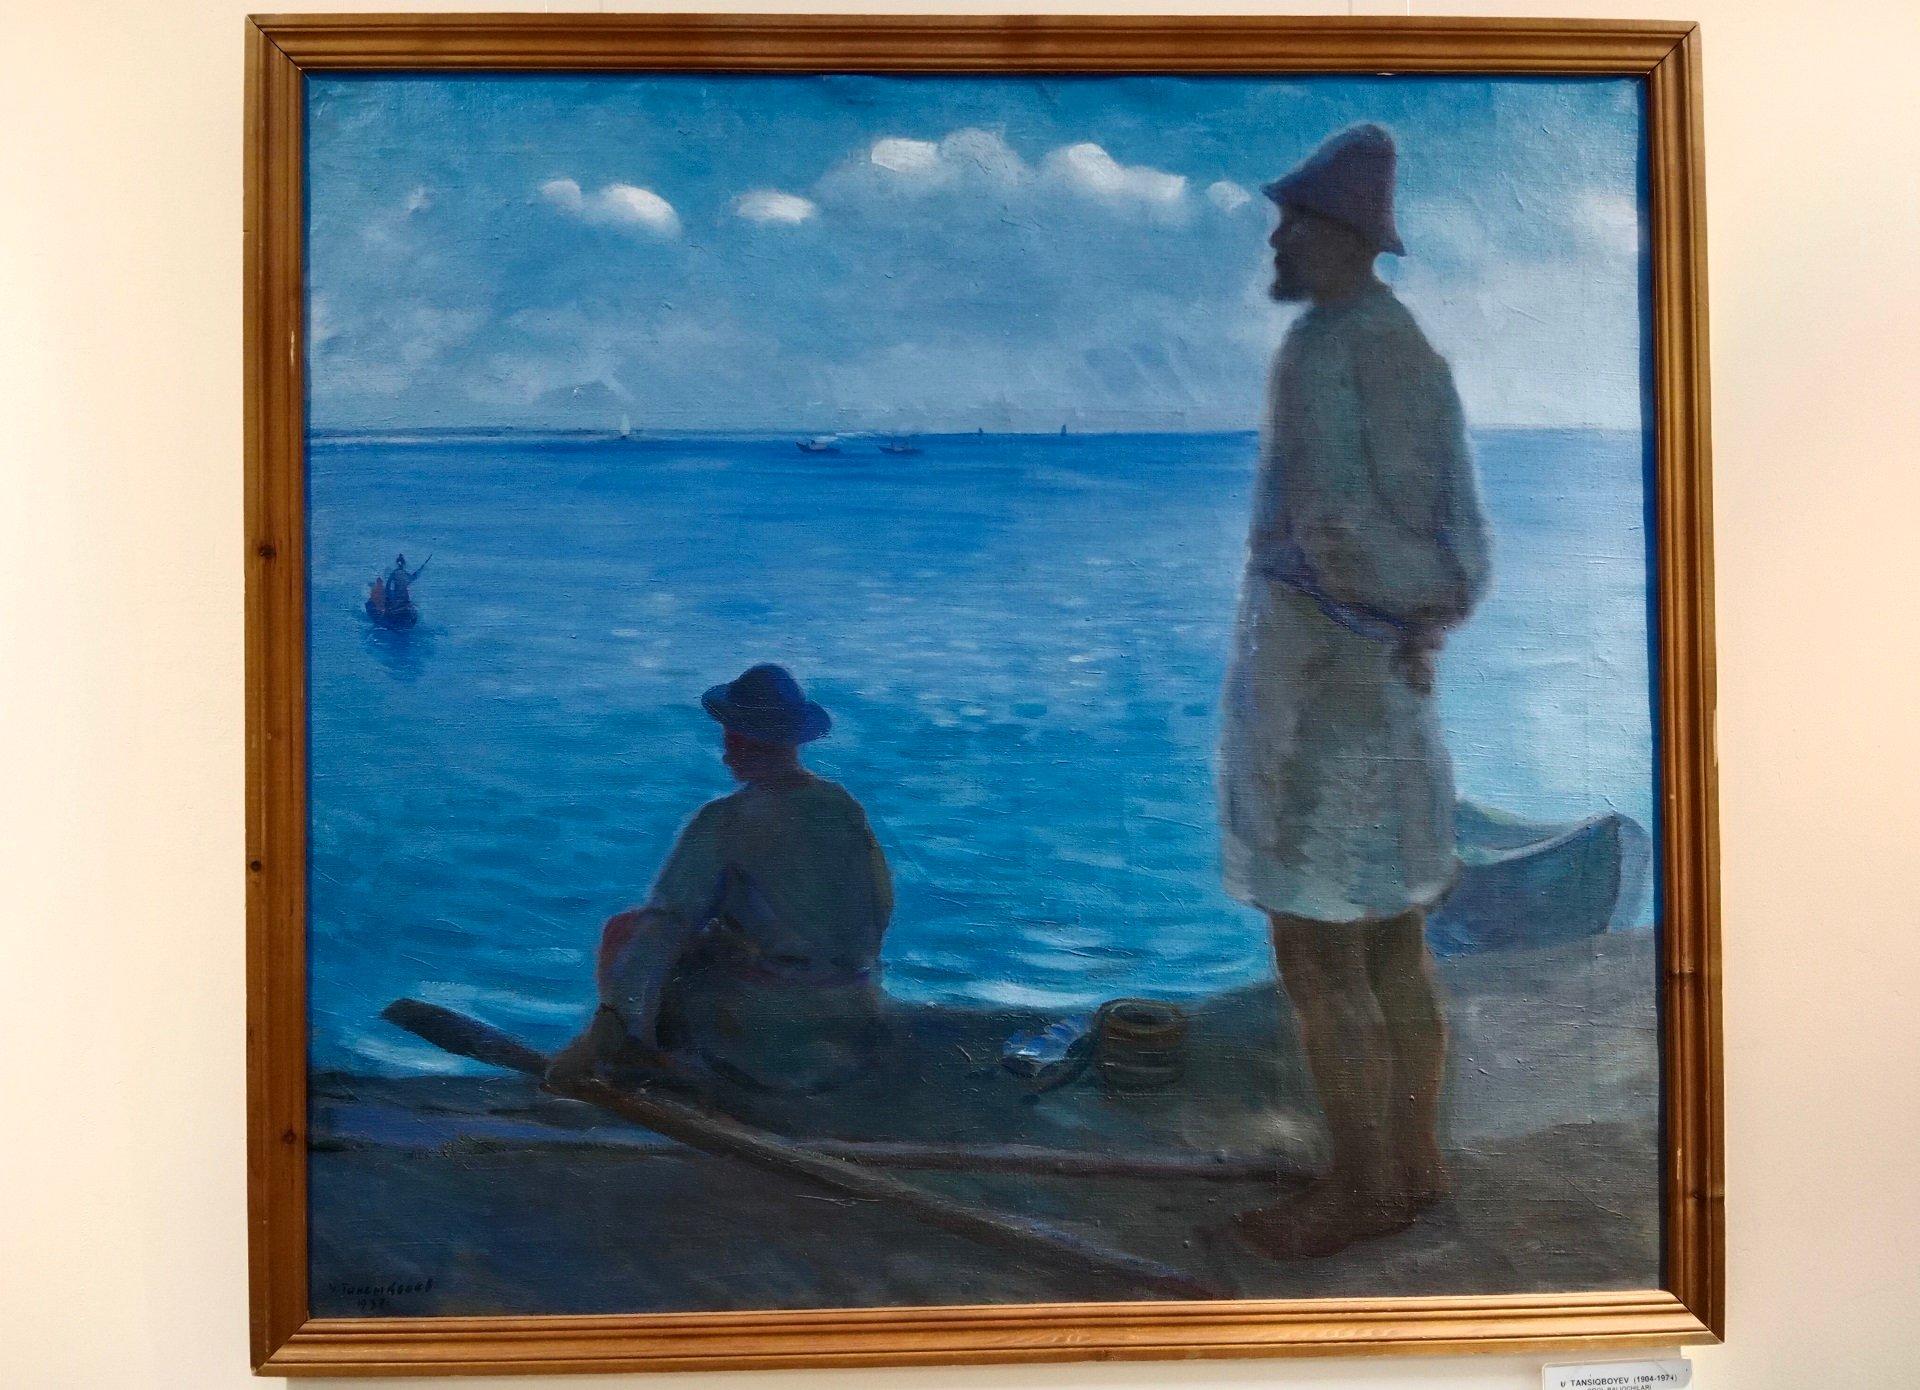 obraz przedstawiający rybaków patrzących na morze